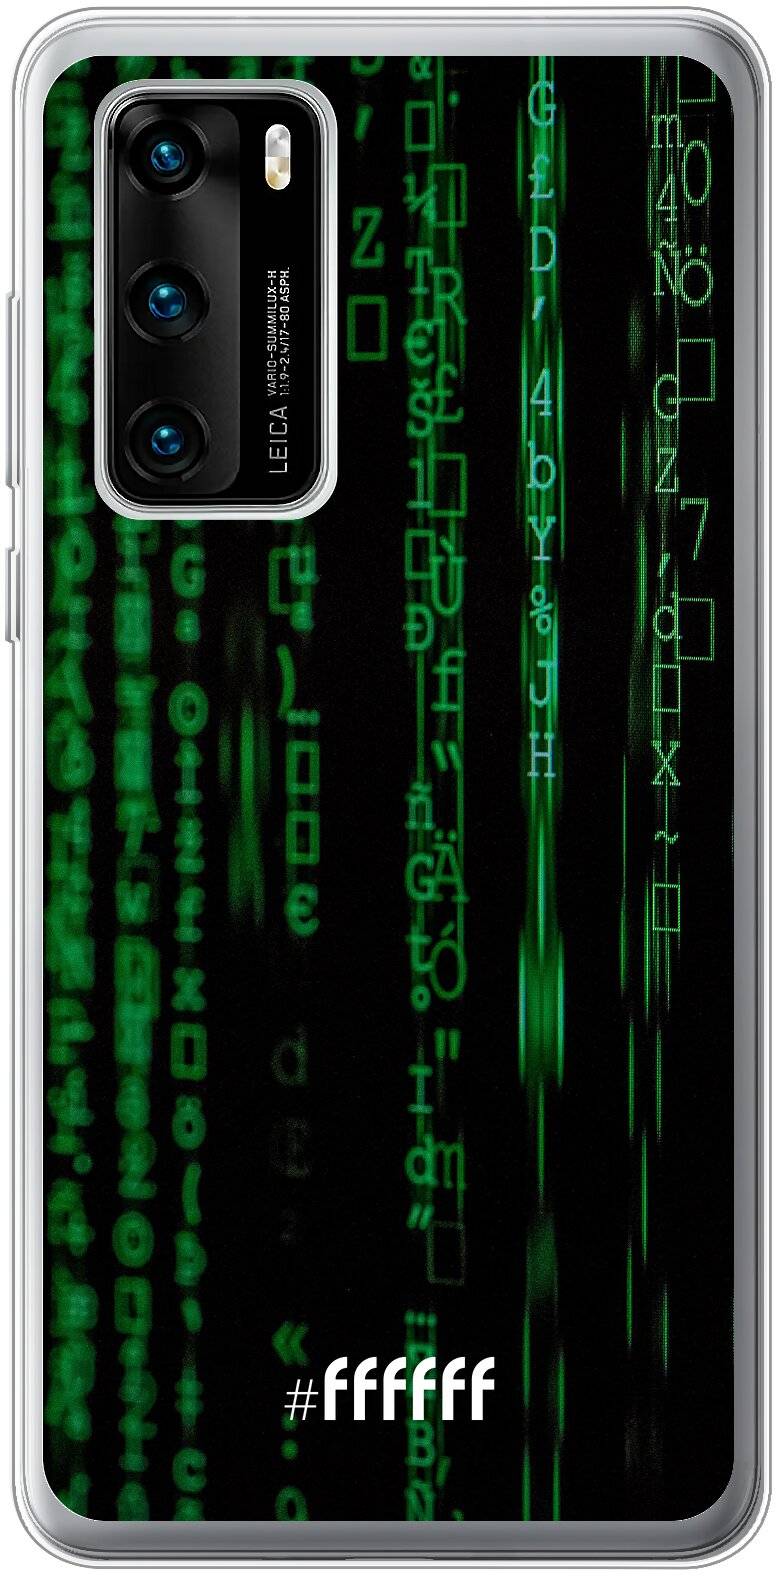 Hacking The Matrix P40